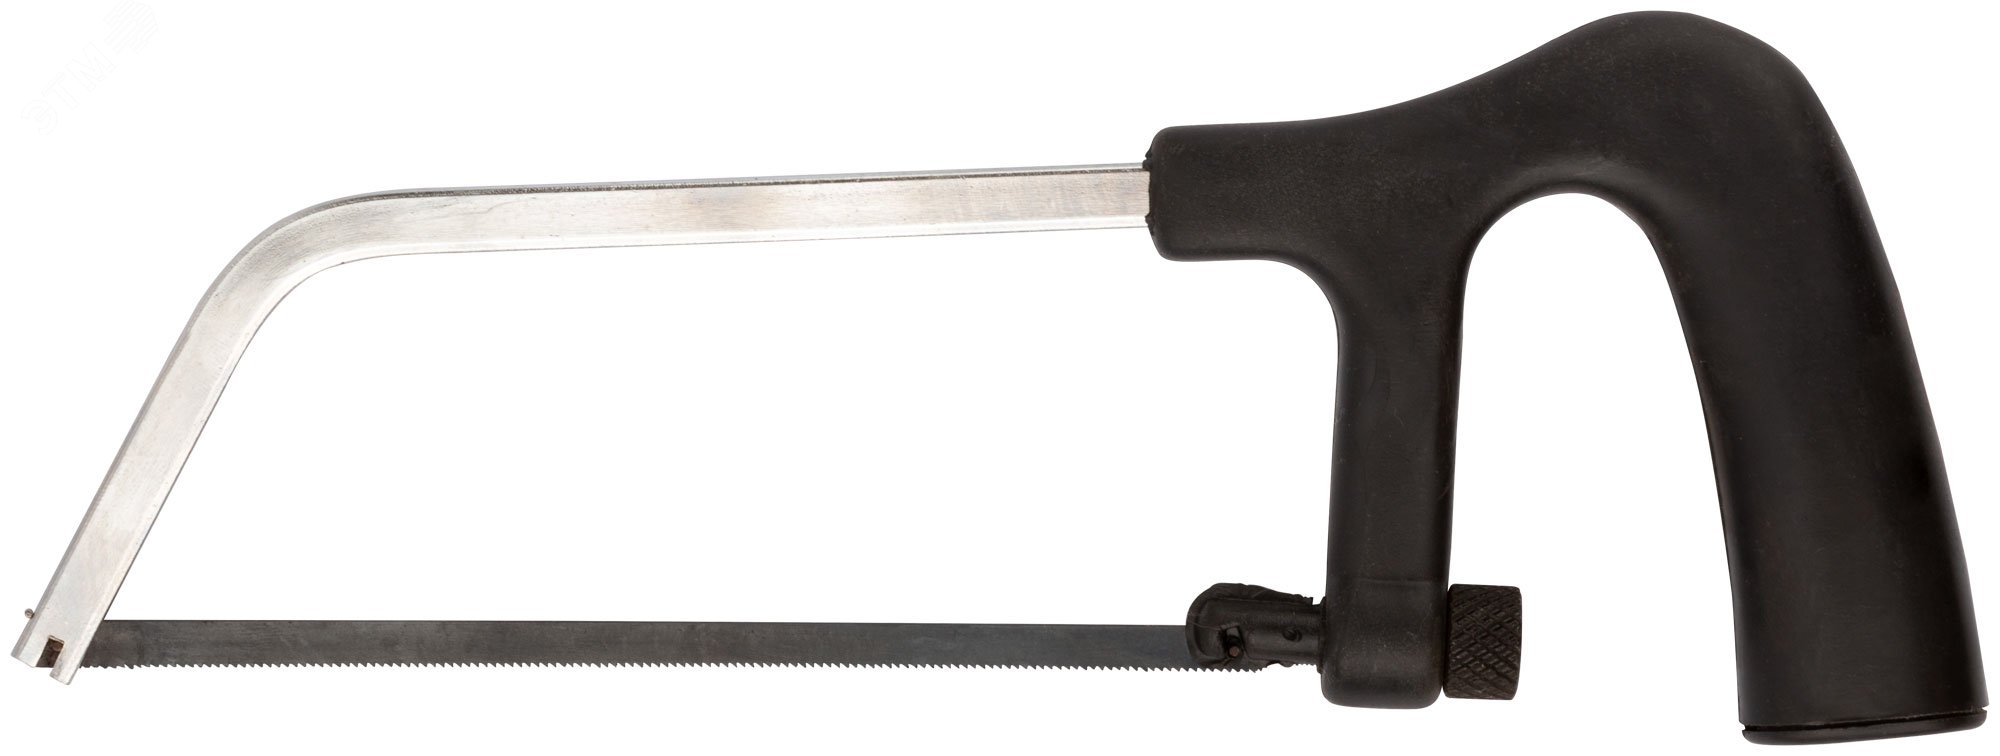 Ножовка по металлу мини 150 мм, пластиковая черная ручка 40020 КУРС - превью